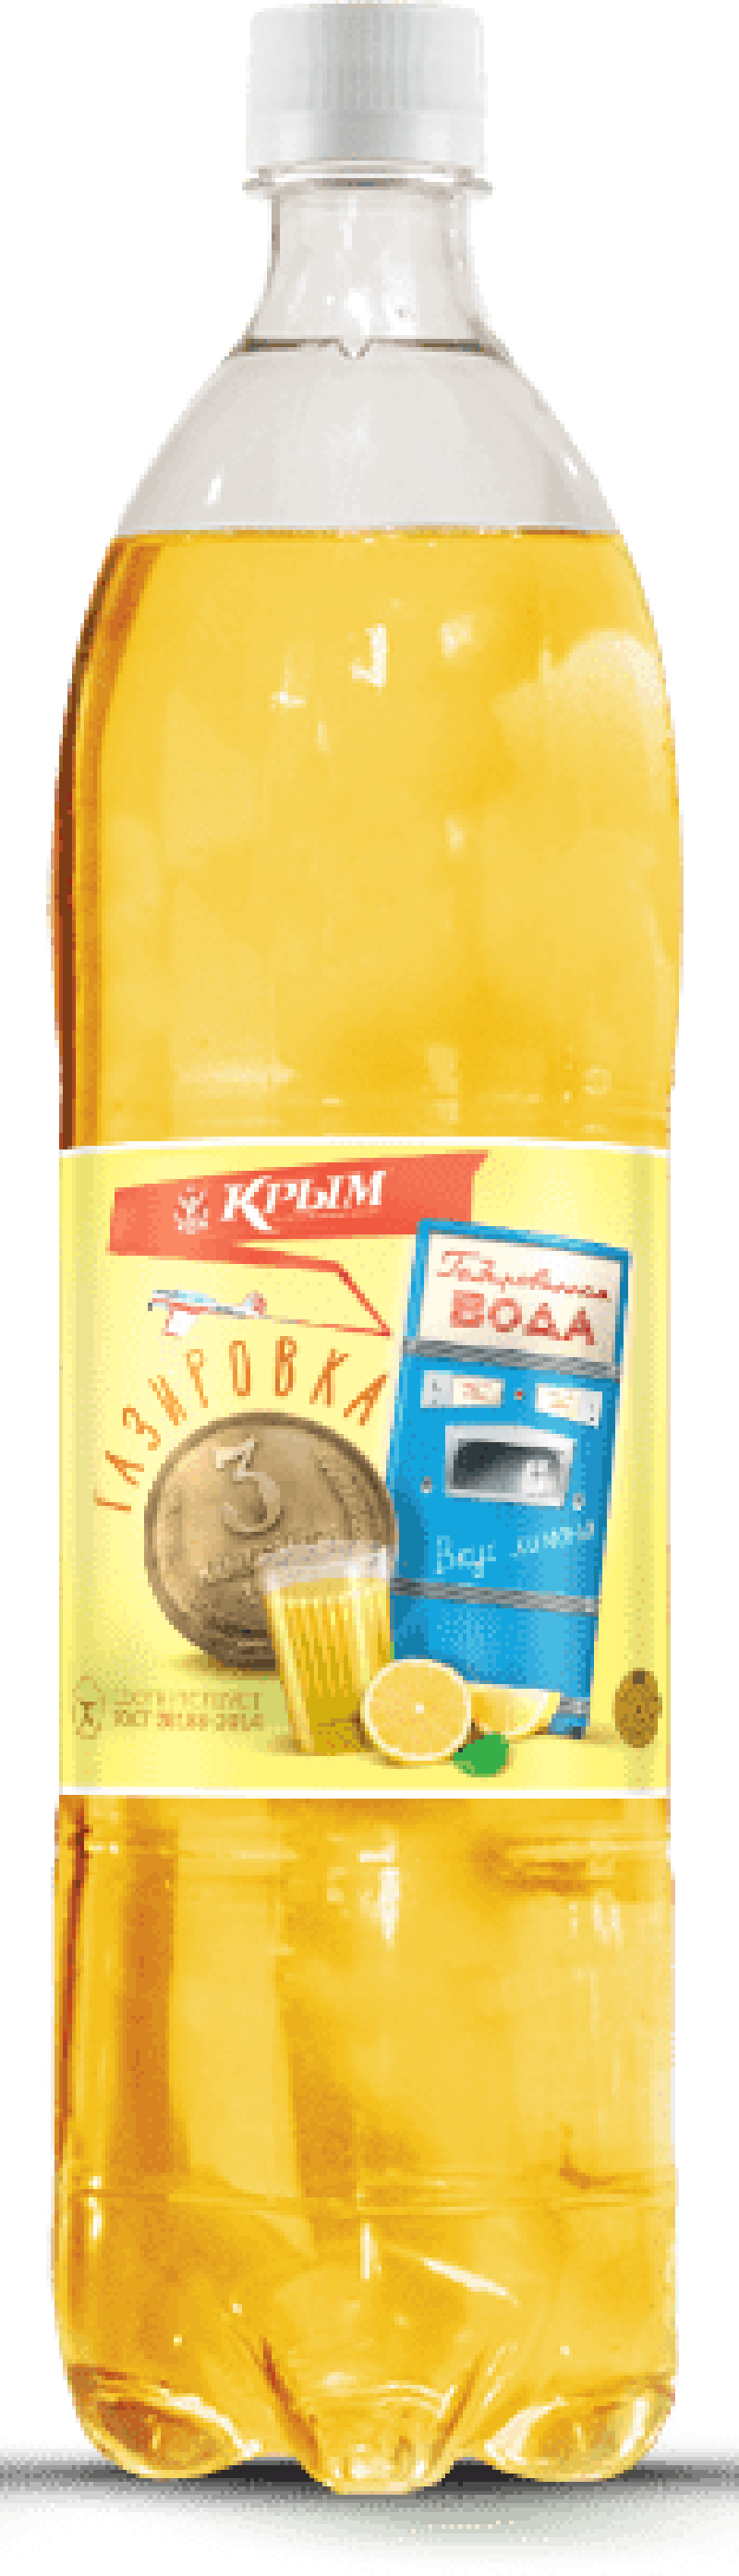 Газировка ТМ Крым 3 копейки с лимонным вкусом питьевая газированная 1.5л